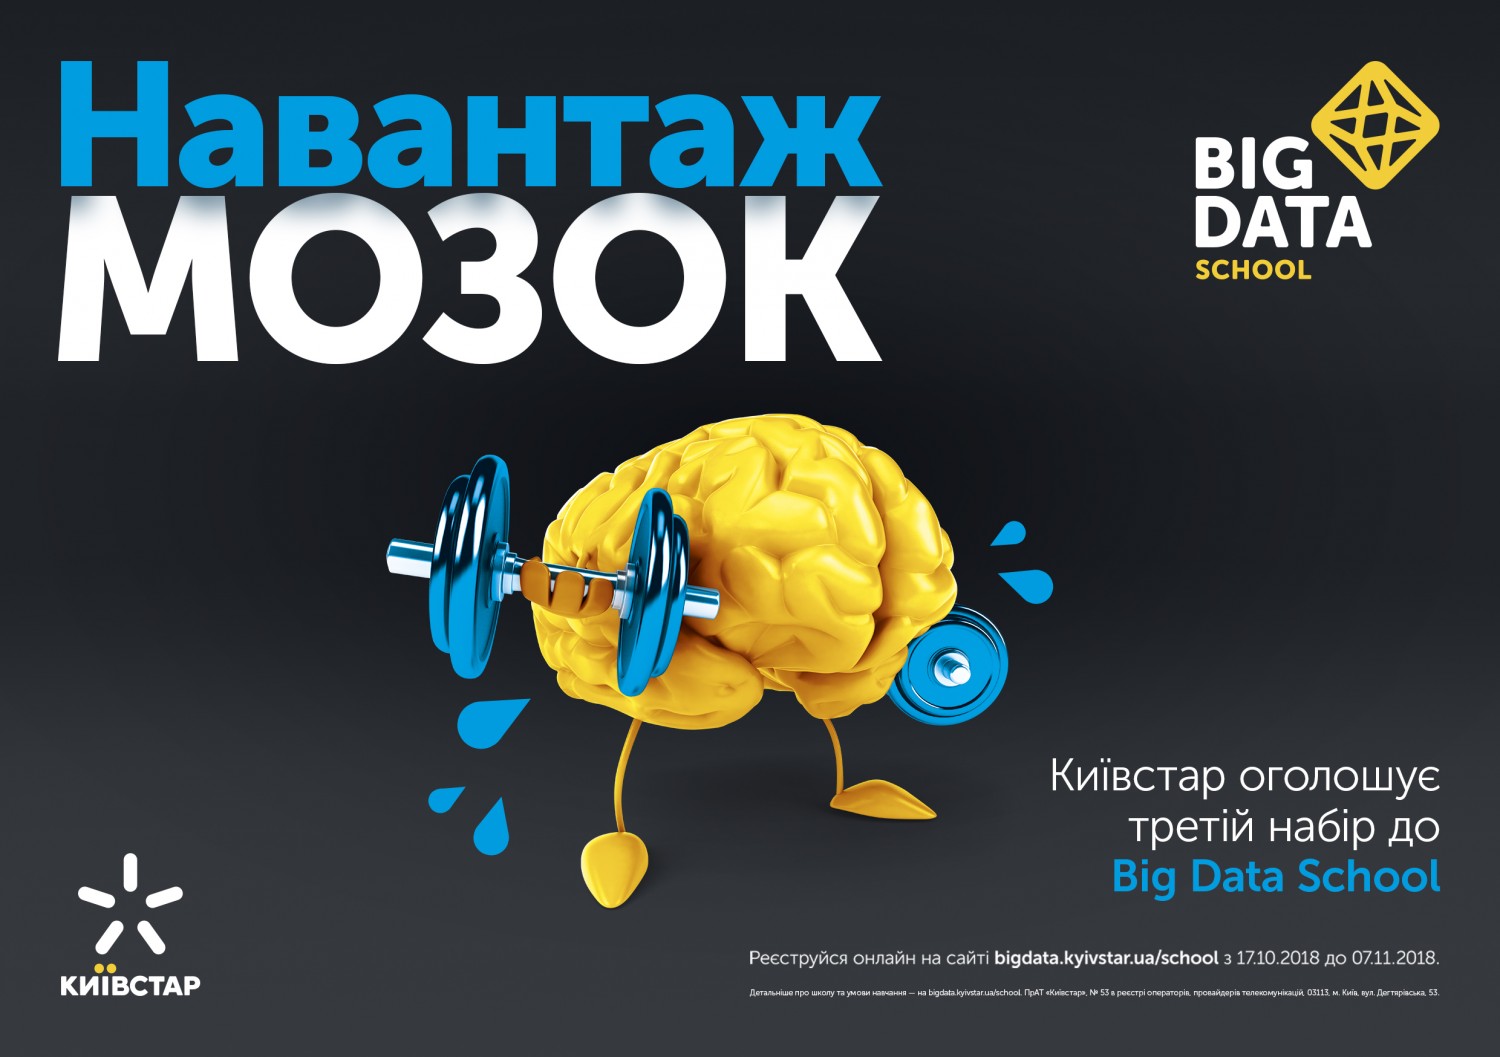 Київстар оголошує третій набір до Big Data School